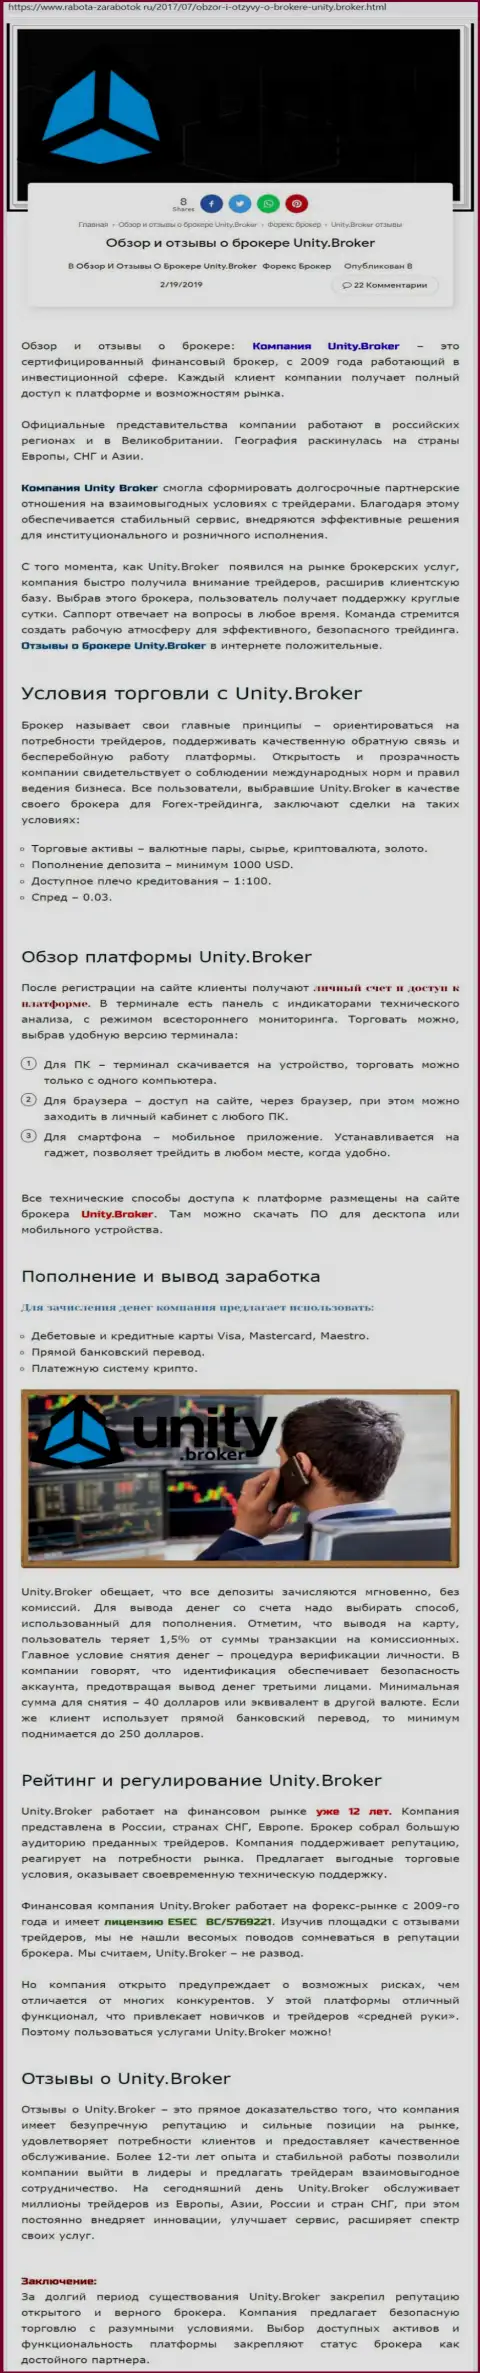 Обзорная инфа FOREX брокерской компании UnityBroker на сайте работа-заработок ру